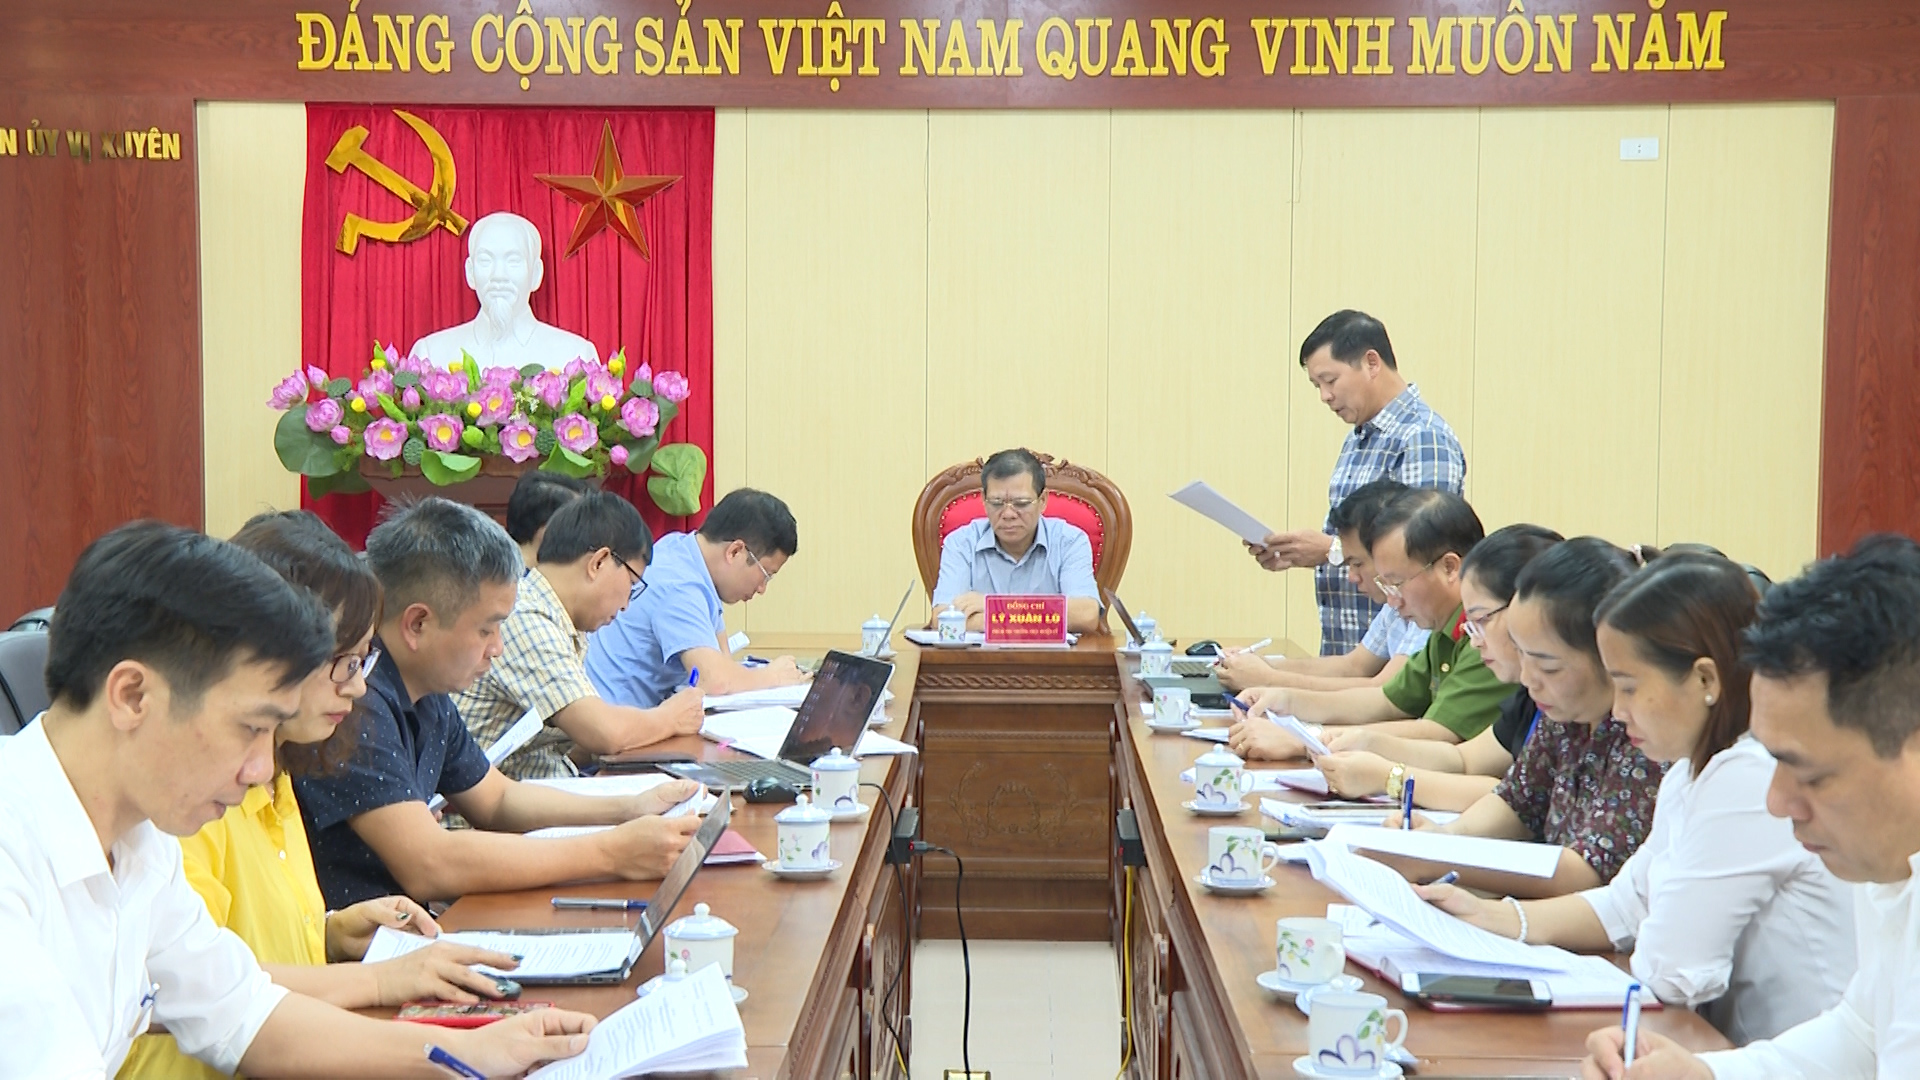 Vị Xuyên họp bàn công tác chỉnh trang đô thị và xây dựng thị trấn Vị Xuyên đạt đô thị loại IV.